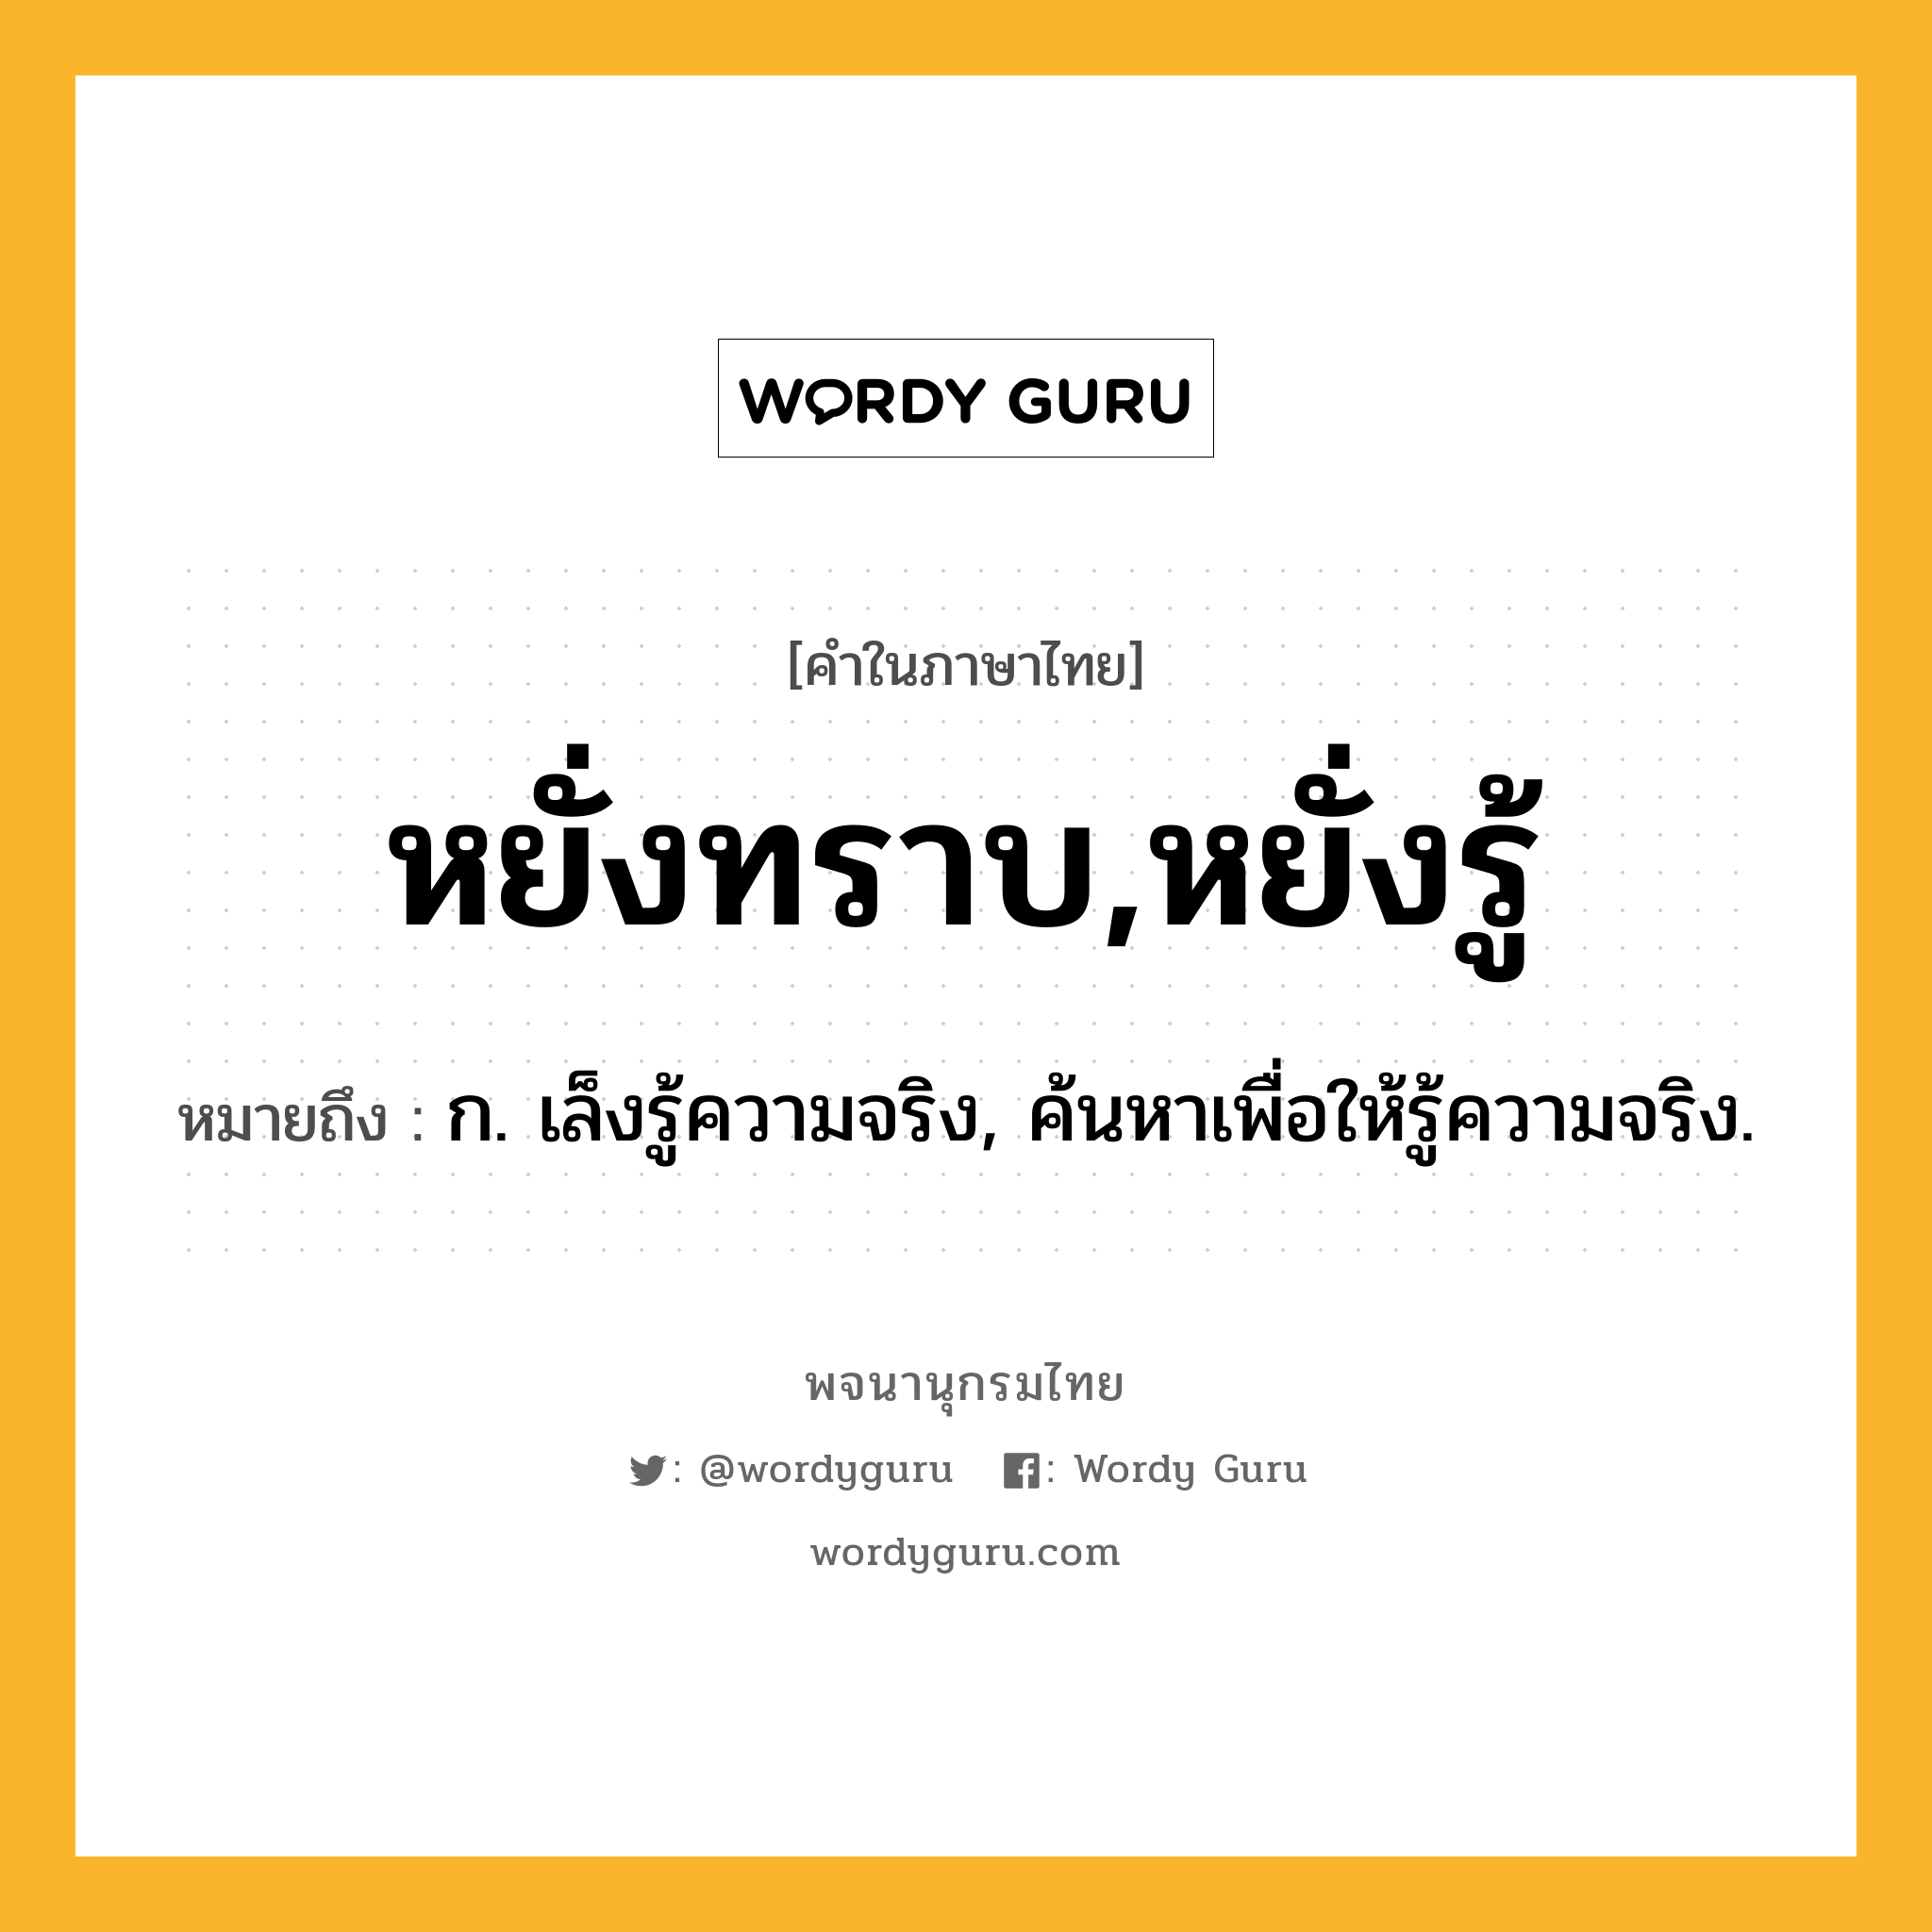 หยั่งทราบ,หยั่งรู้ หมายถึงอะไร?, คำในภาษาไทย หยั่งทราบ,หยั่งรู้ หมายถึง ก. เล็งรู้ความจริง, ค้นหาเพื่อให้รู้ความจริง.